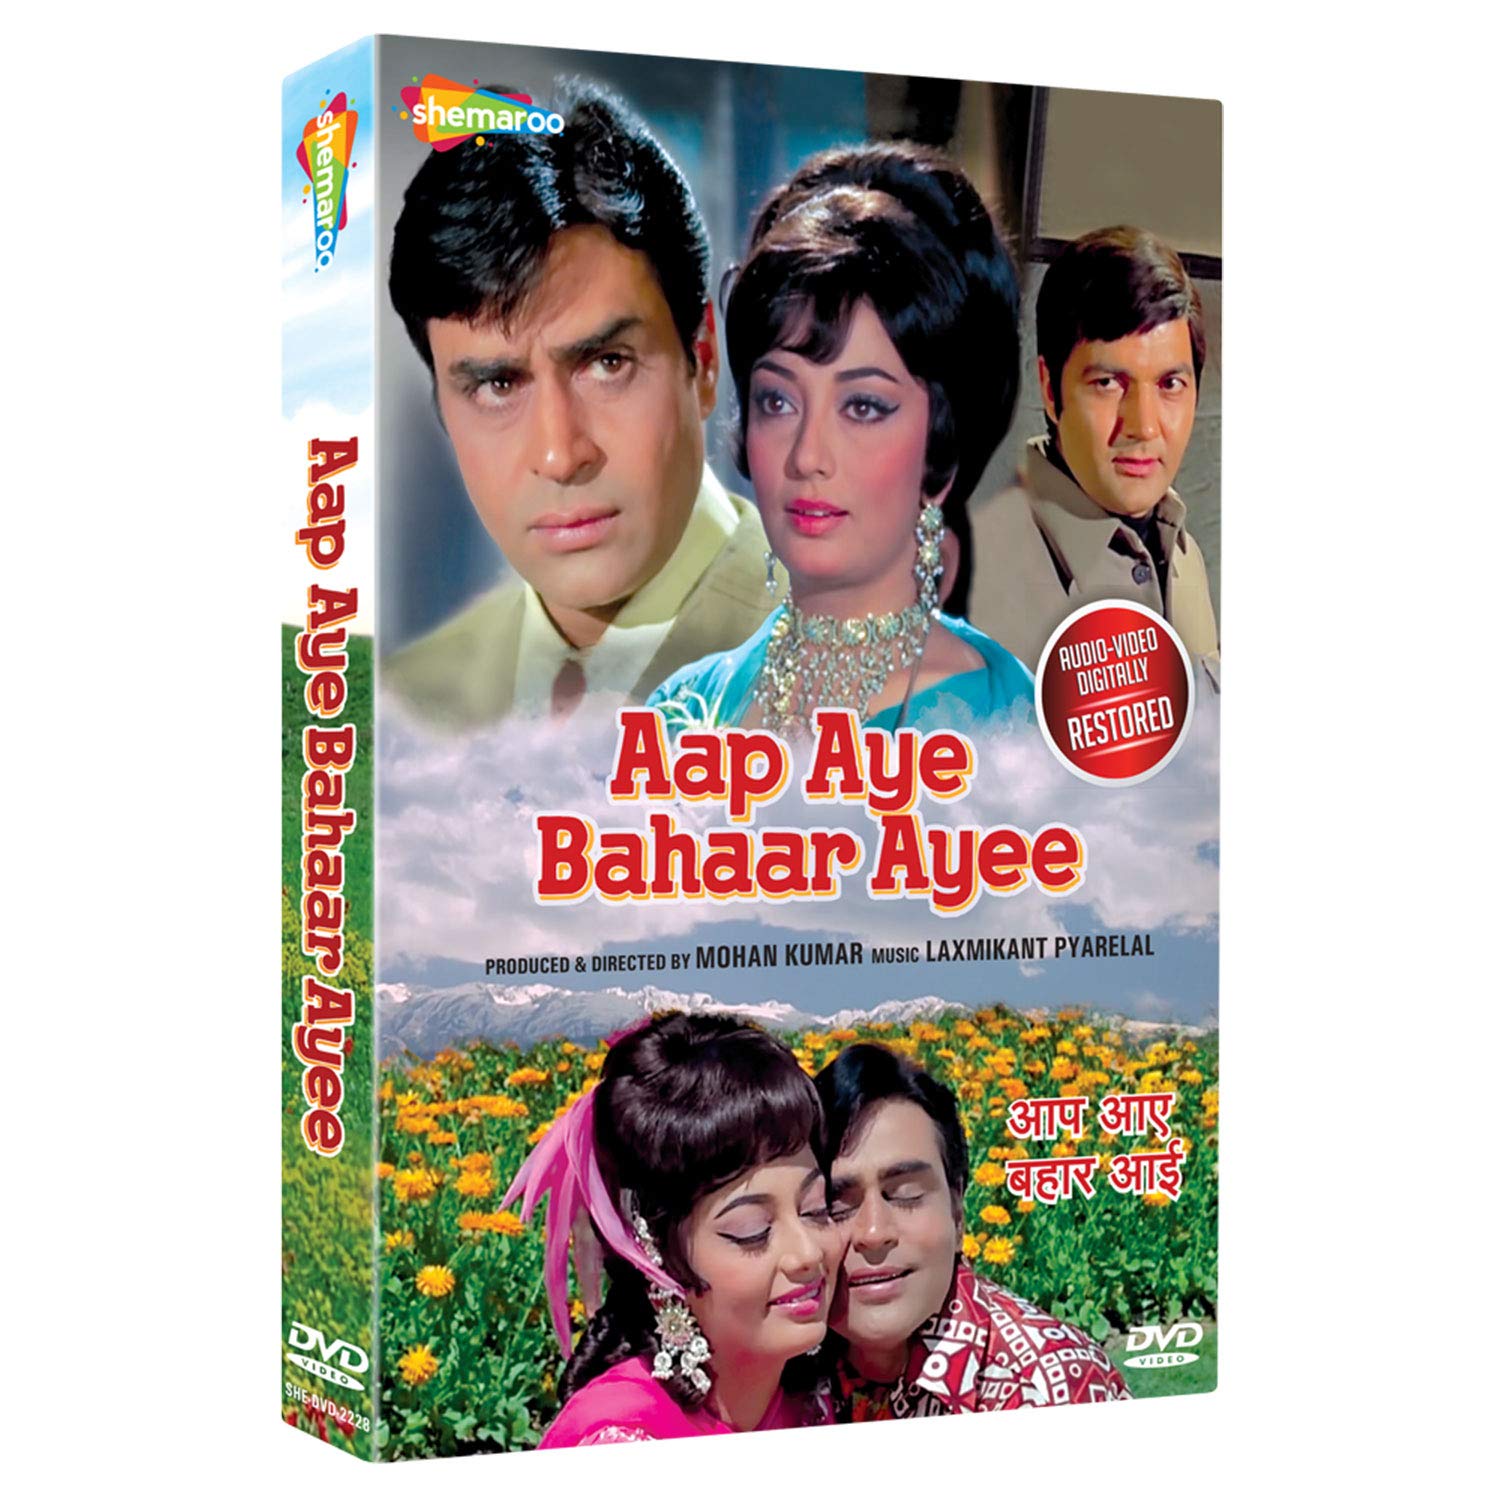 aap-aye-bahaar-ayee-movie-purchase-or-watch-online